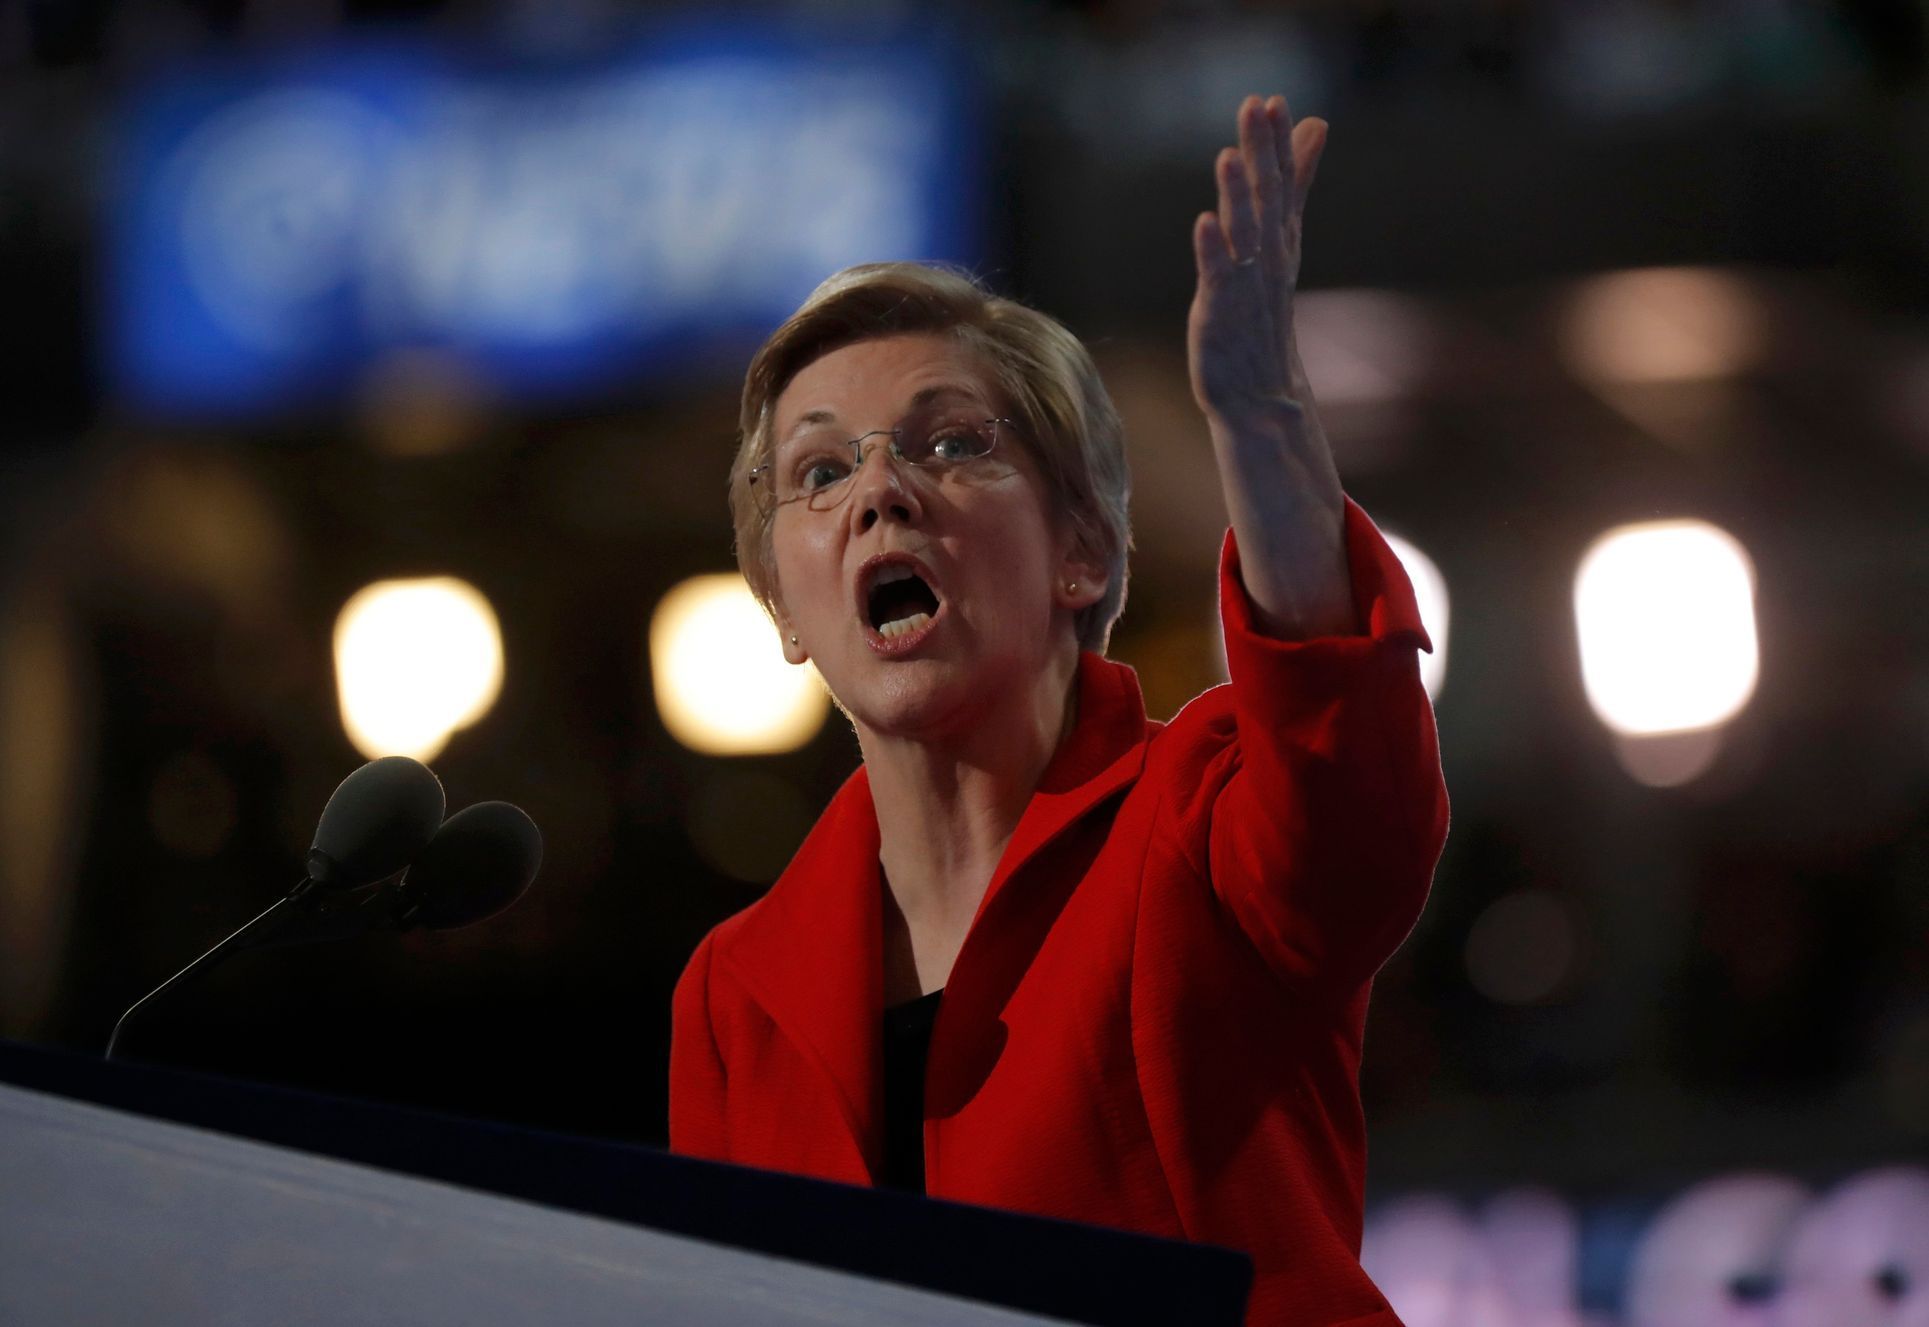 Elizabeth Warrenová během projevu na sjezdu Demokratů v Philadelphii